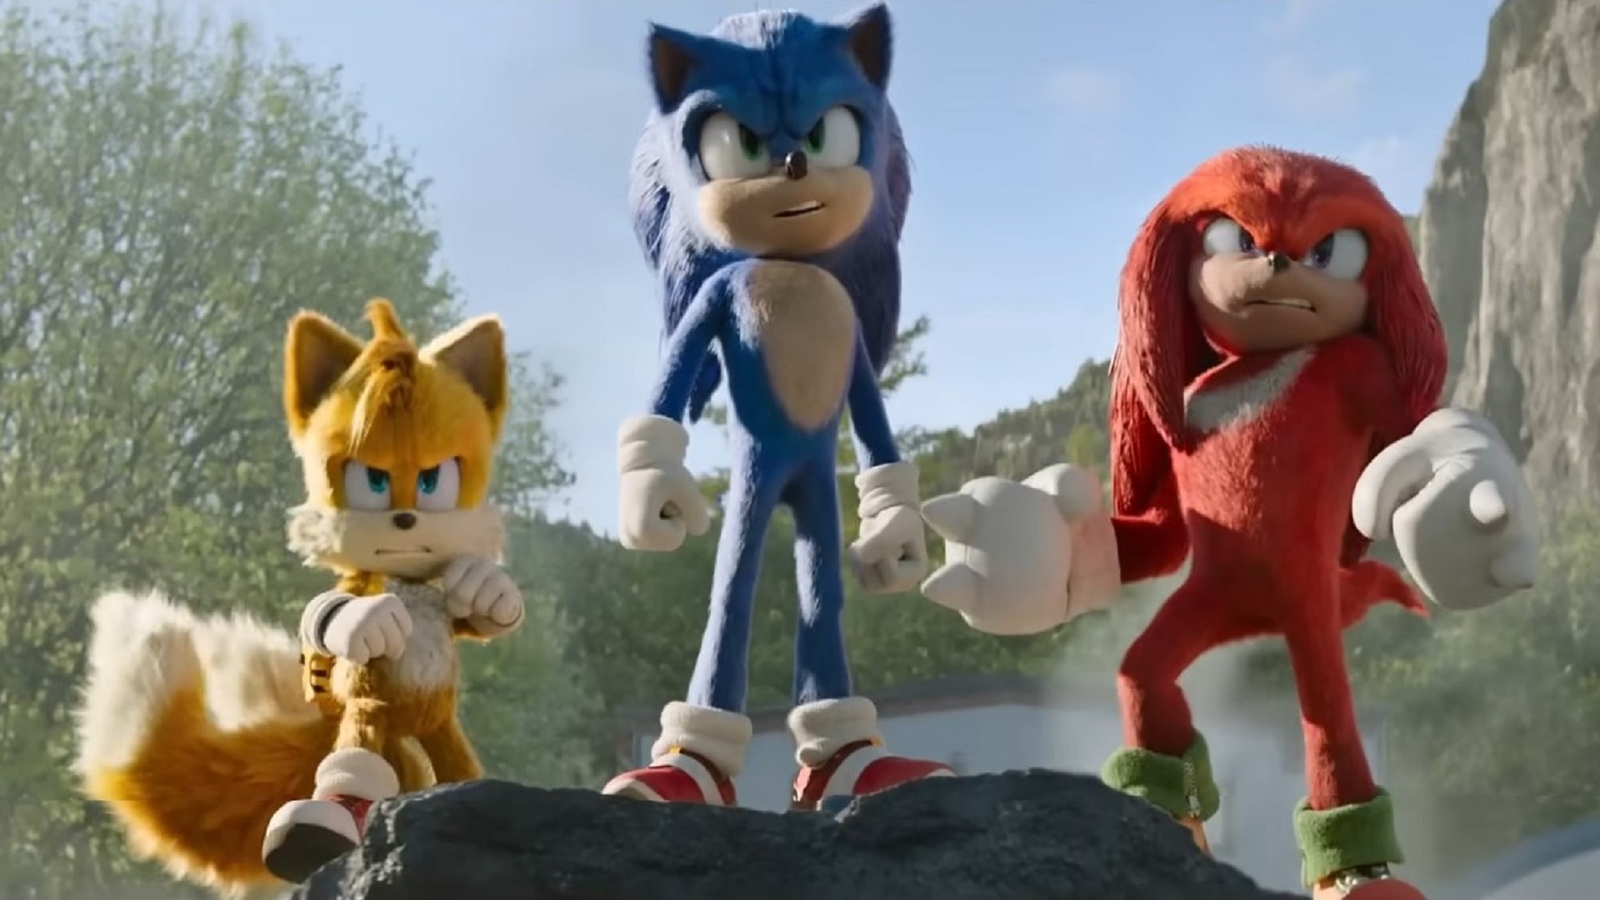 Sonic 3 - O Filme, Trailer Oficial